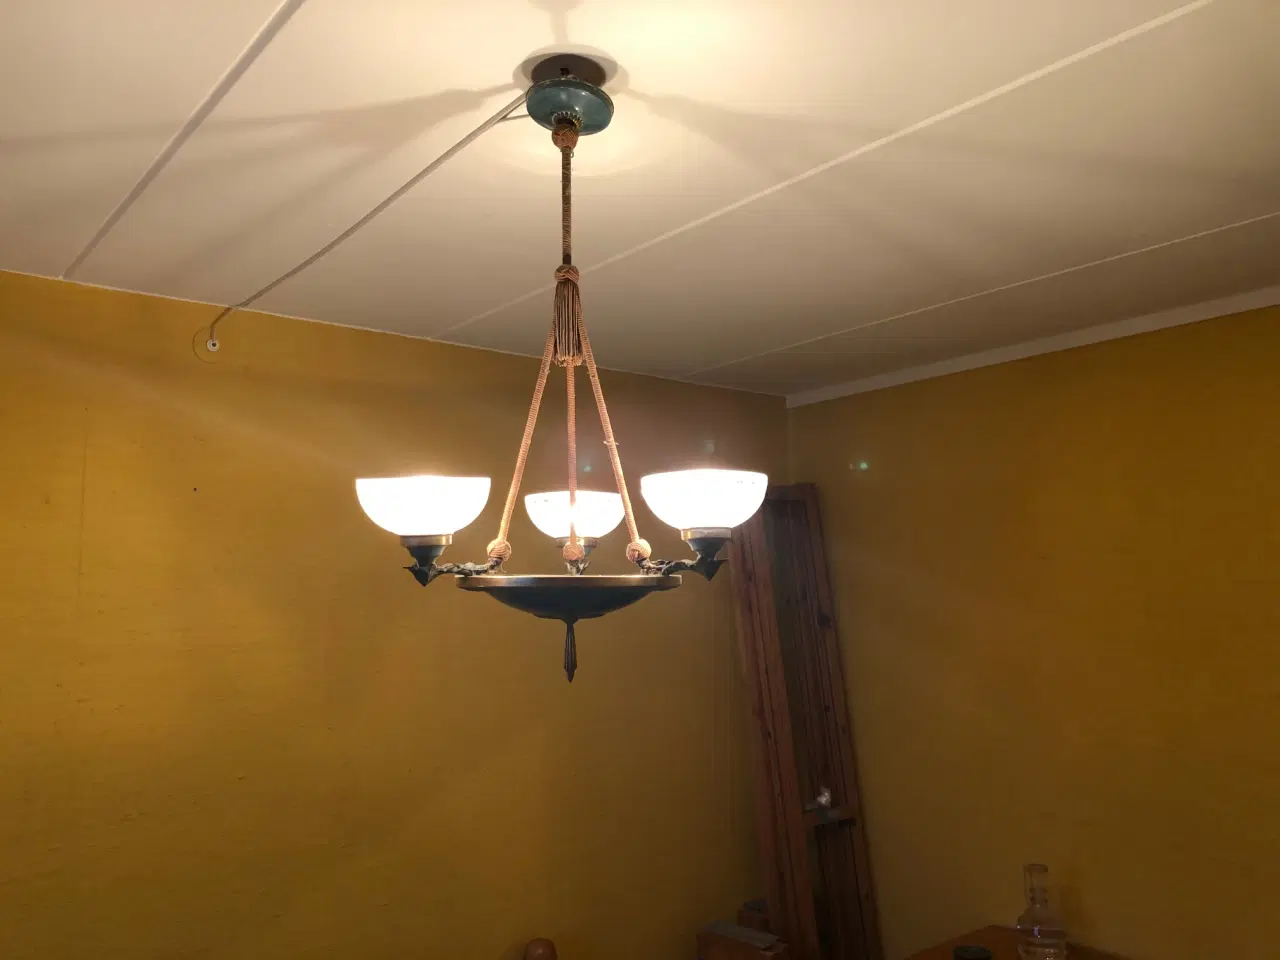 Billede 1 - Antk Loftslampe fra ca år 1900 - tjekkisk